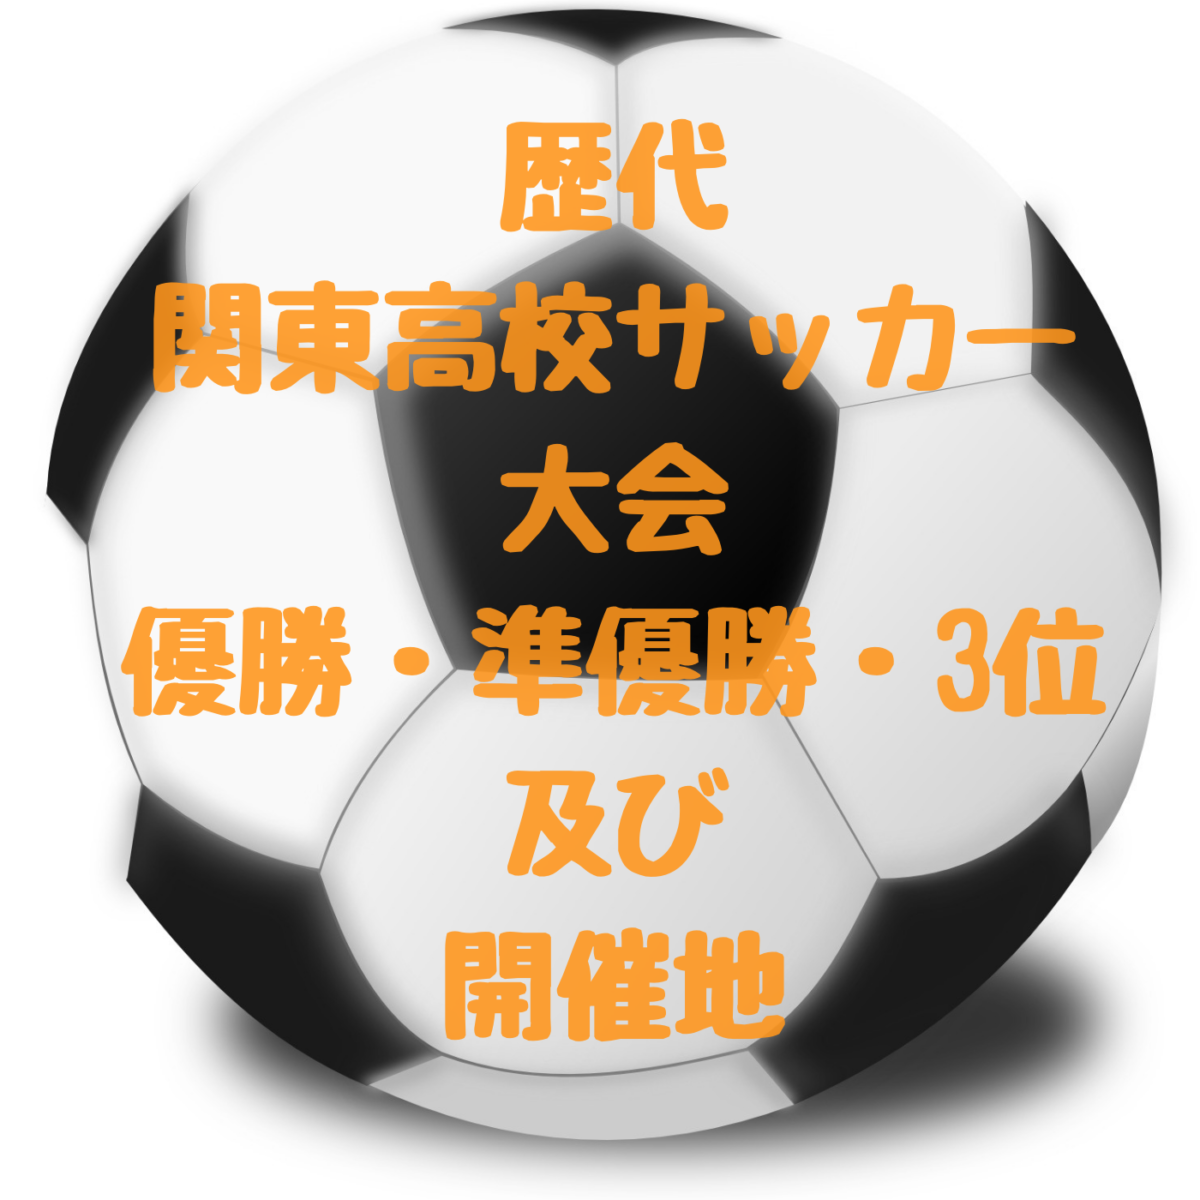 関東高校サッカー大会 歴代 過去優勝 準優勝 3位及び開催地